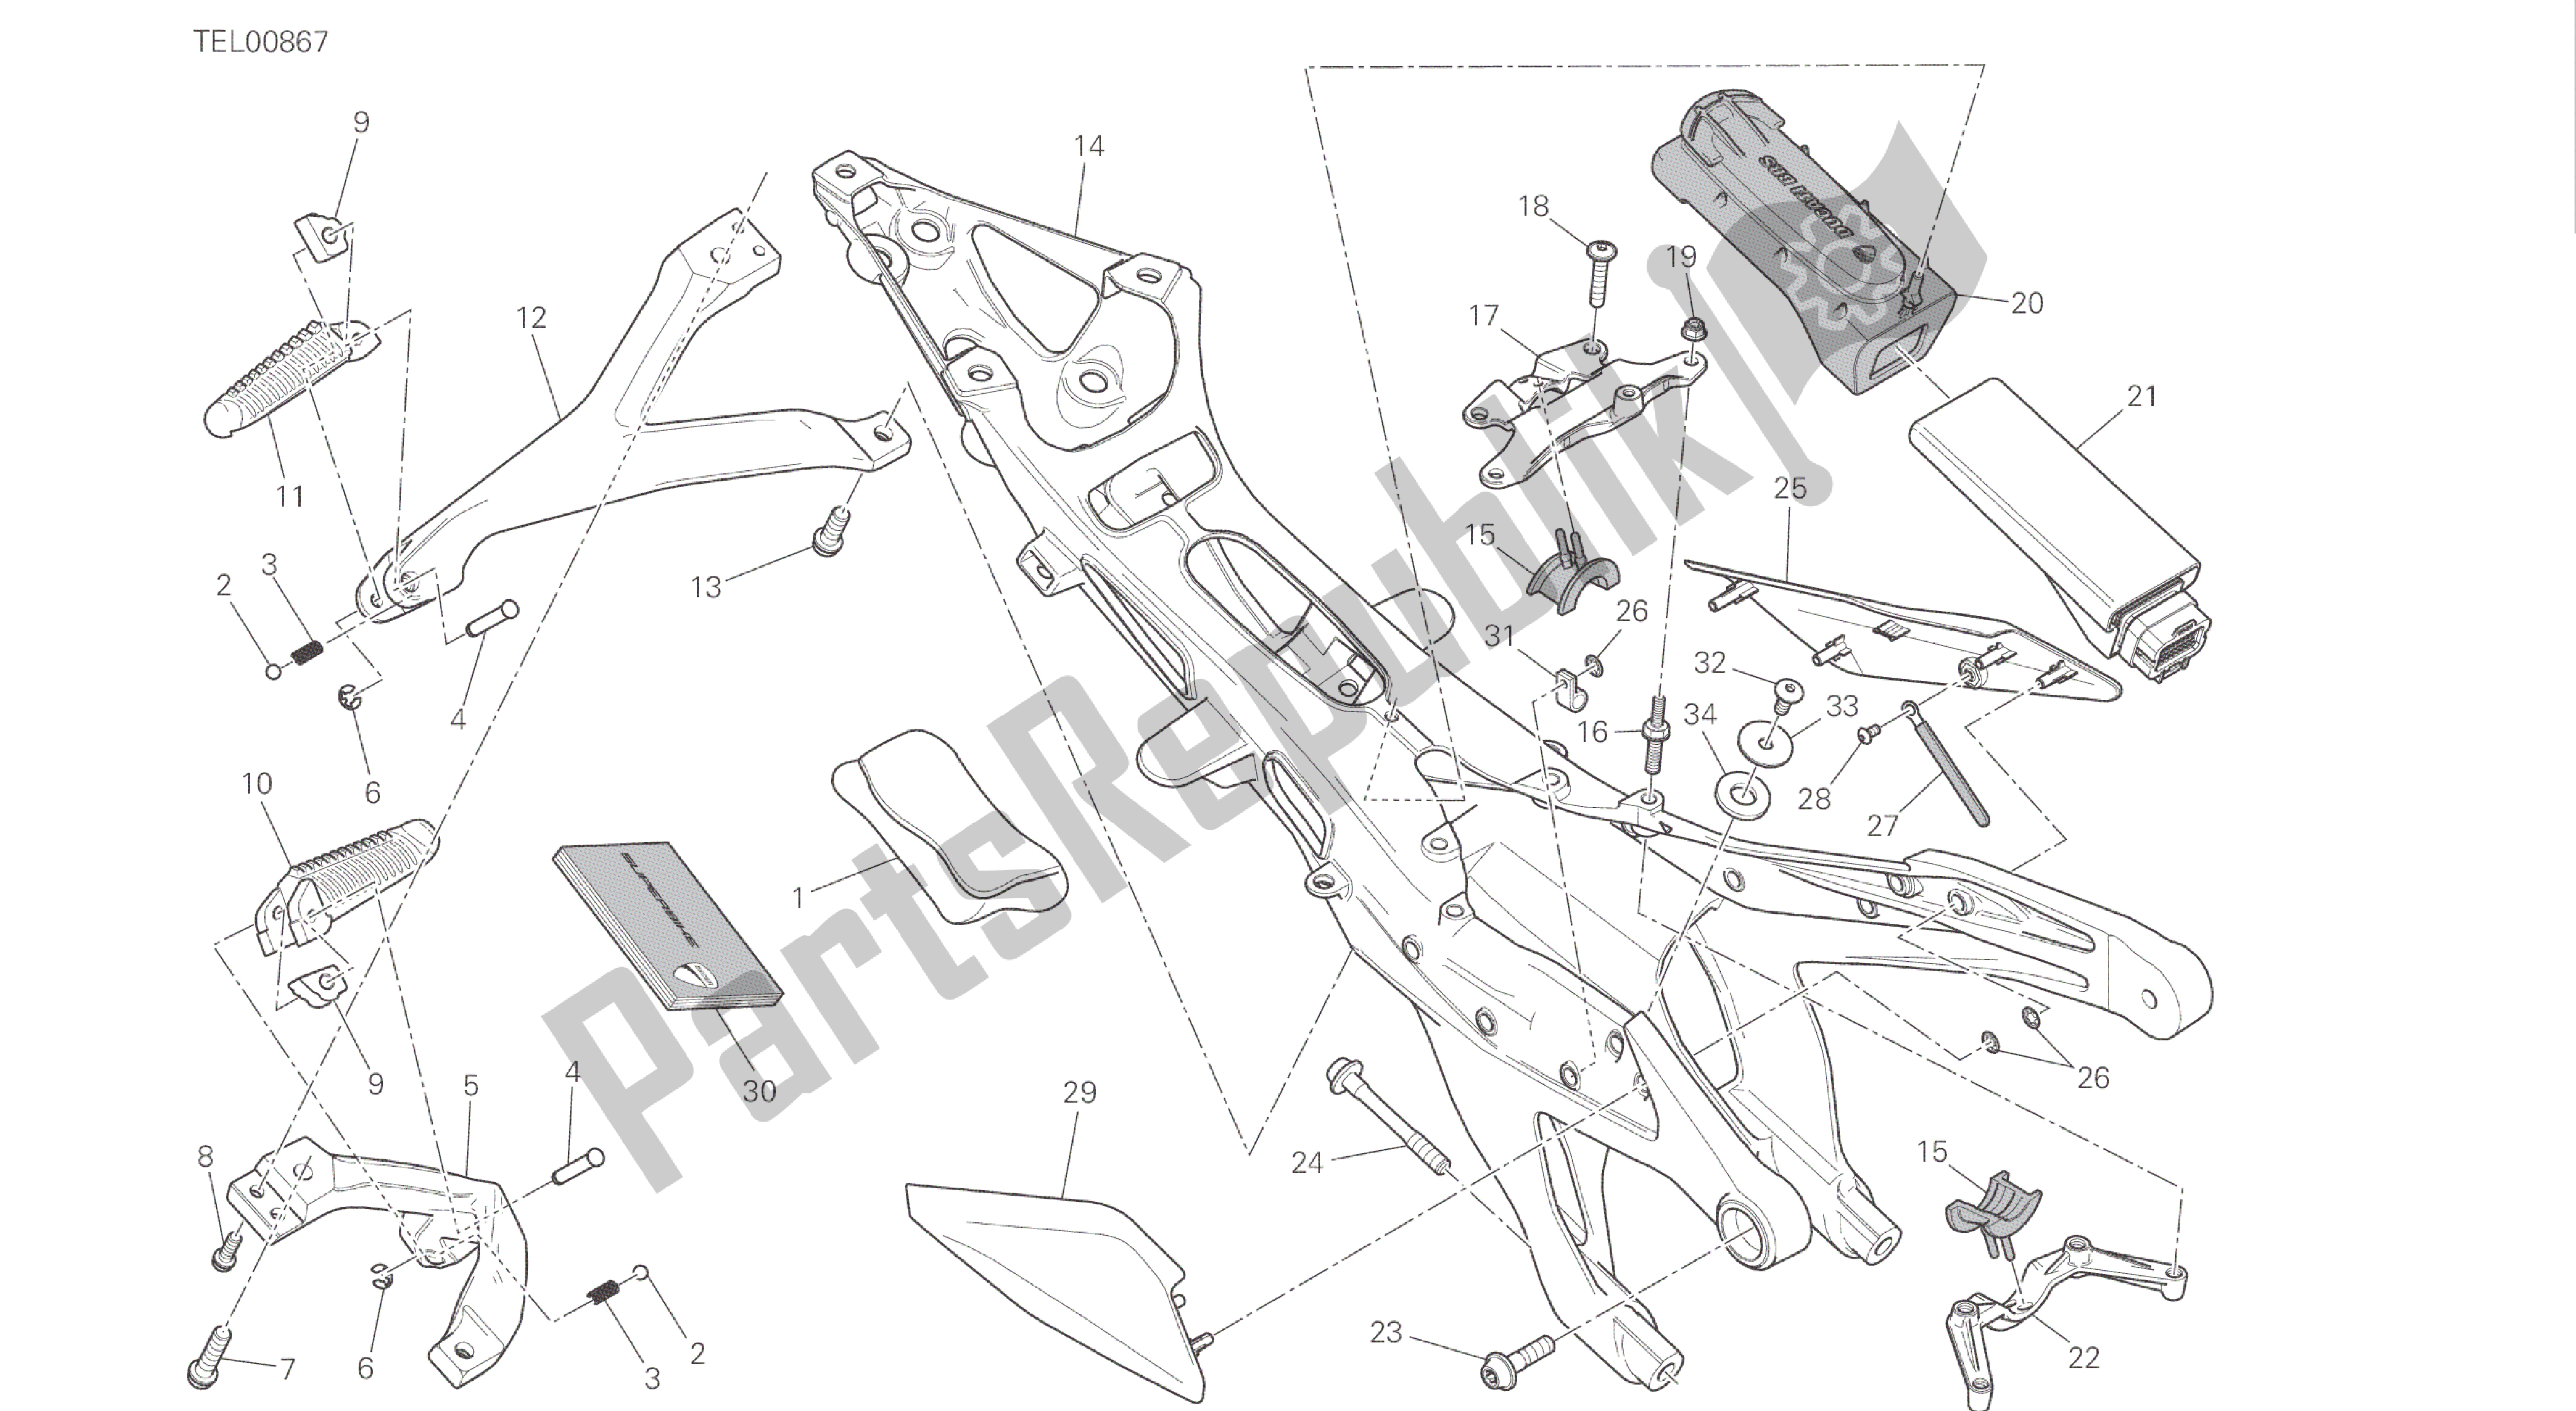 Alle onderdelen voor de Tekening 027 - Achterframe Comp. [mod: 1299s; Xst: Aus, Eur, Fra, Jap, Twn] Groepsframe van de Ducati Panigale S ABS 1299 2016